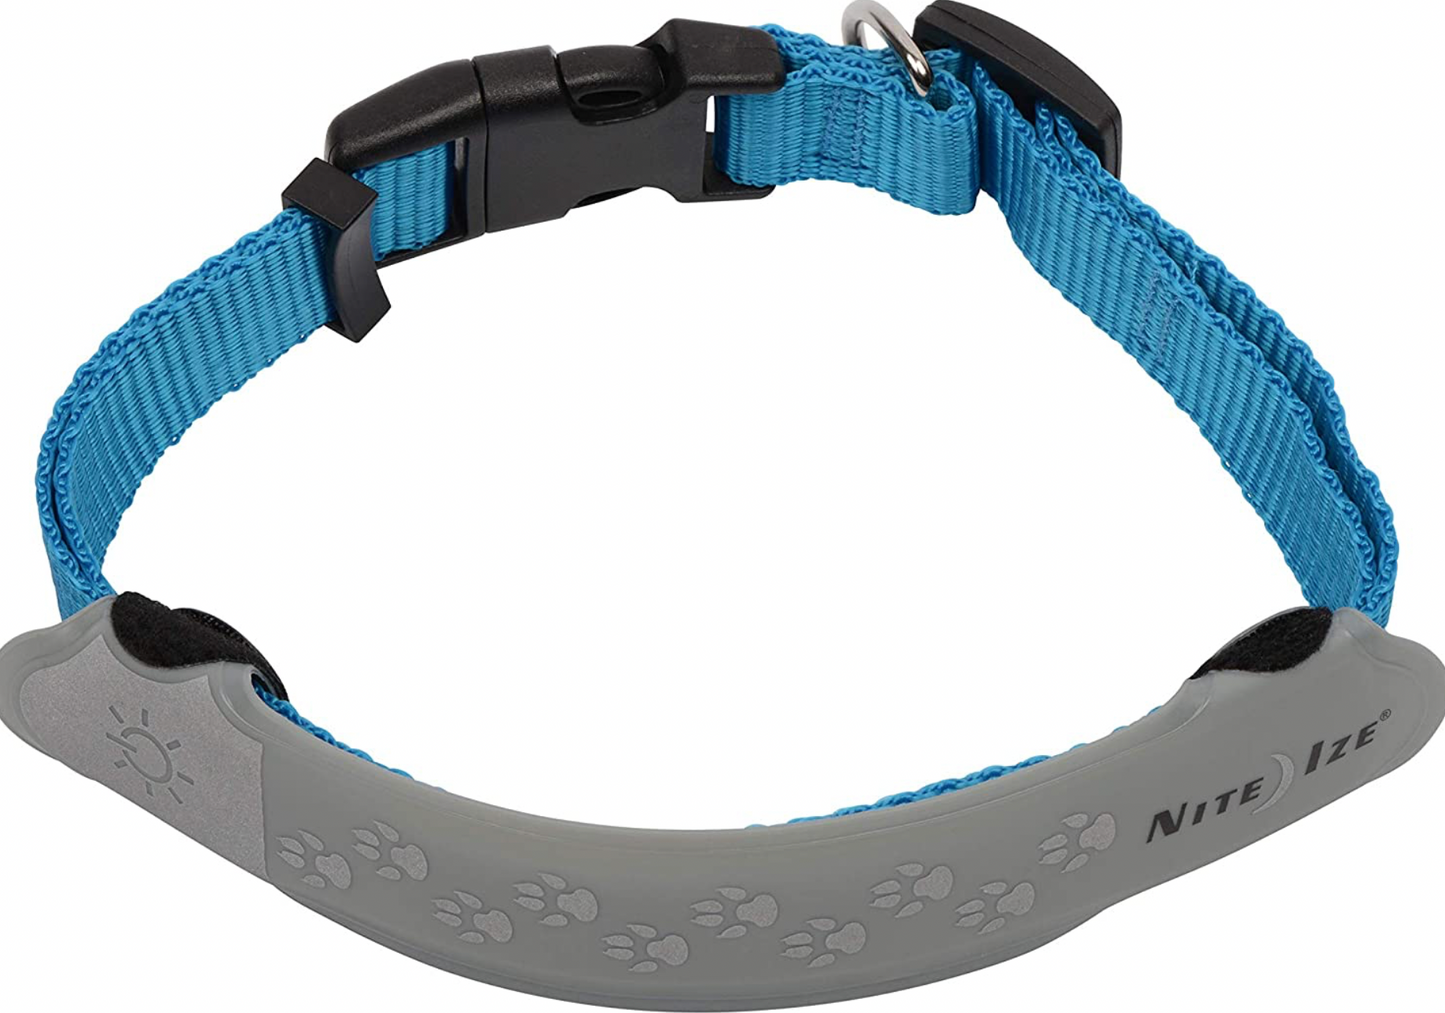 Nite Dawg LED Dog Collar Covers by Nite Ize